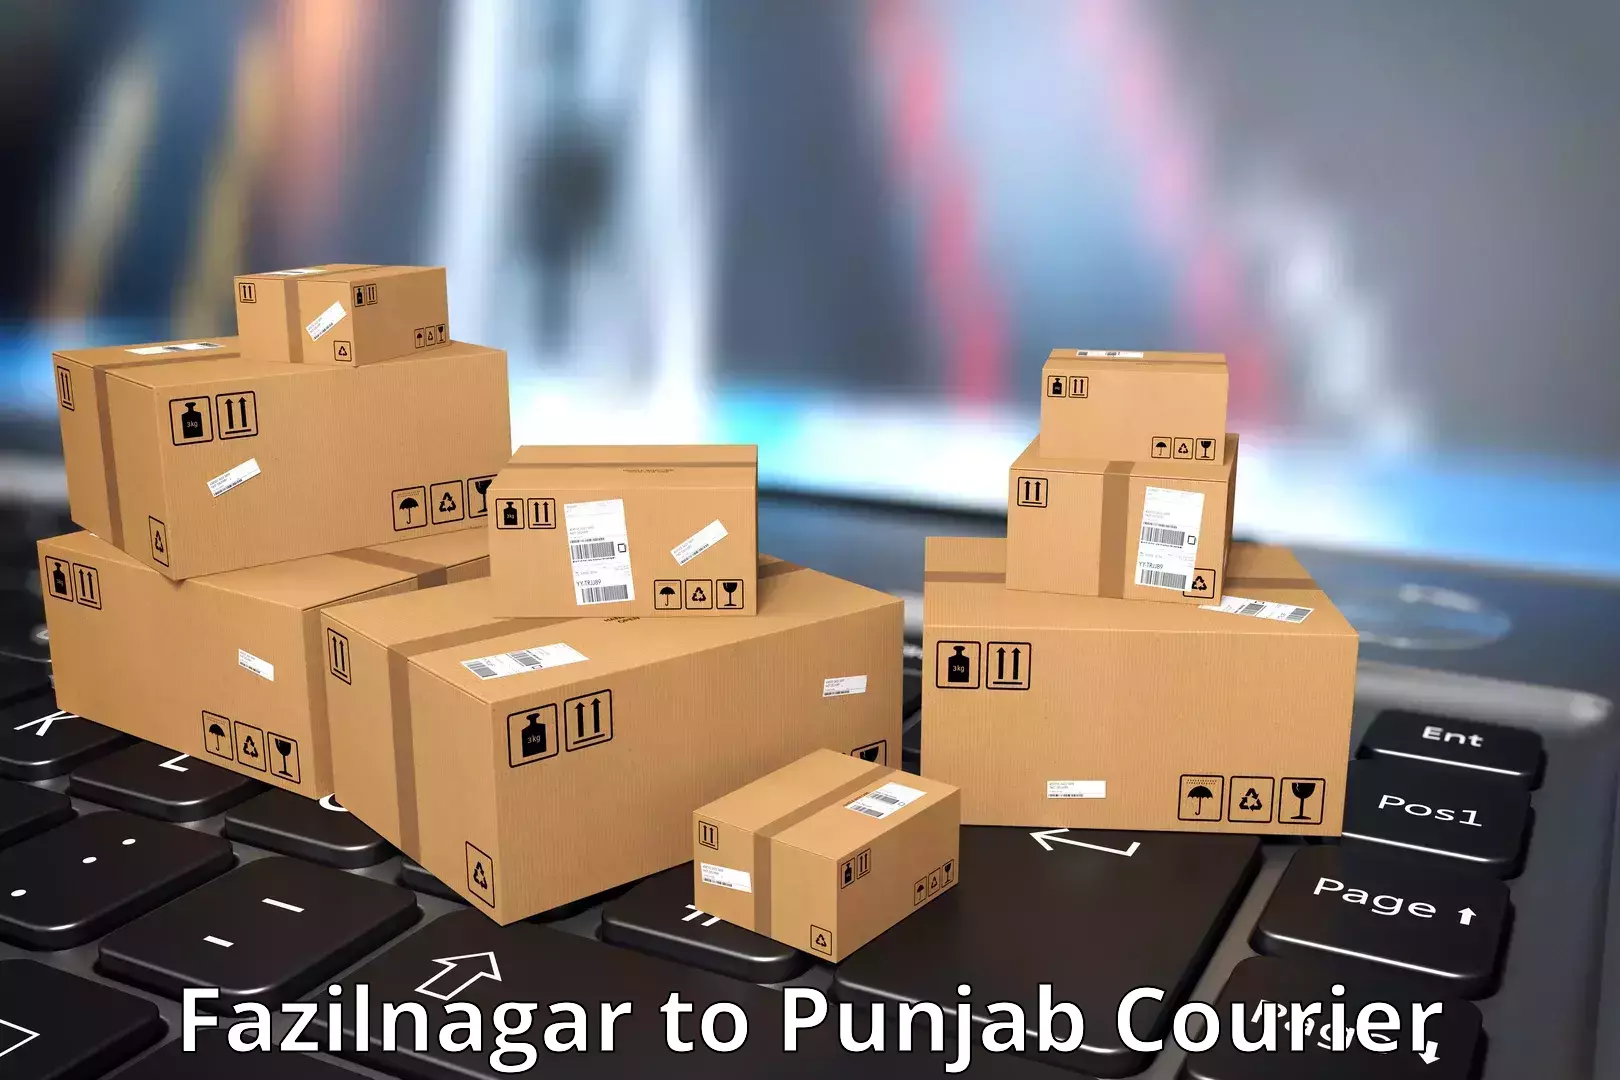 Courier service comparison Fazilnagar to Malout